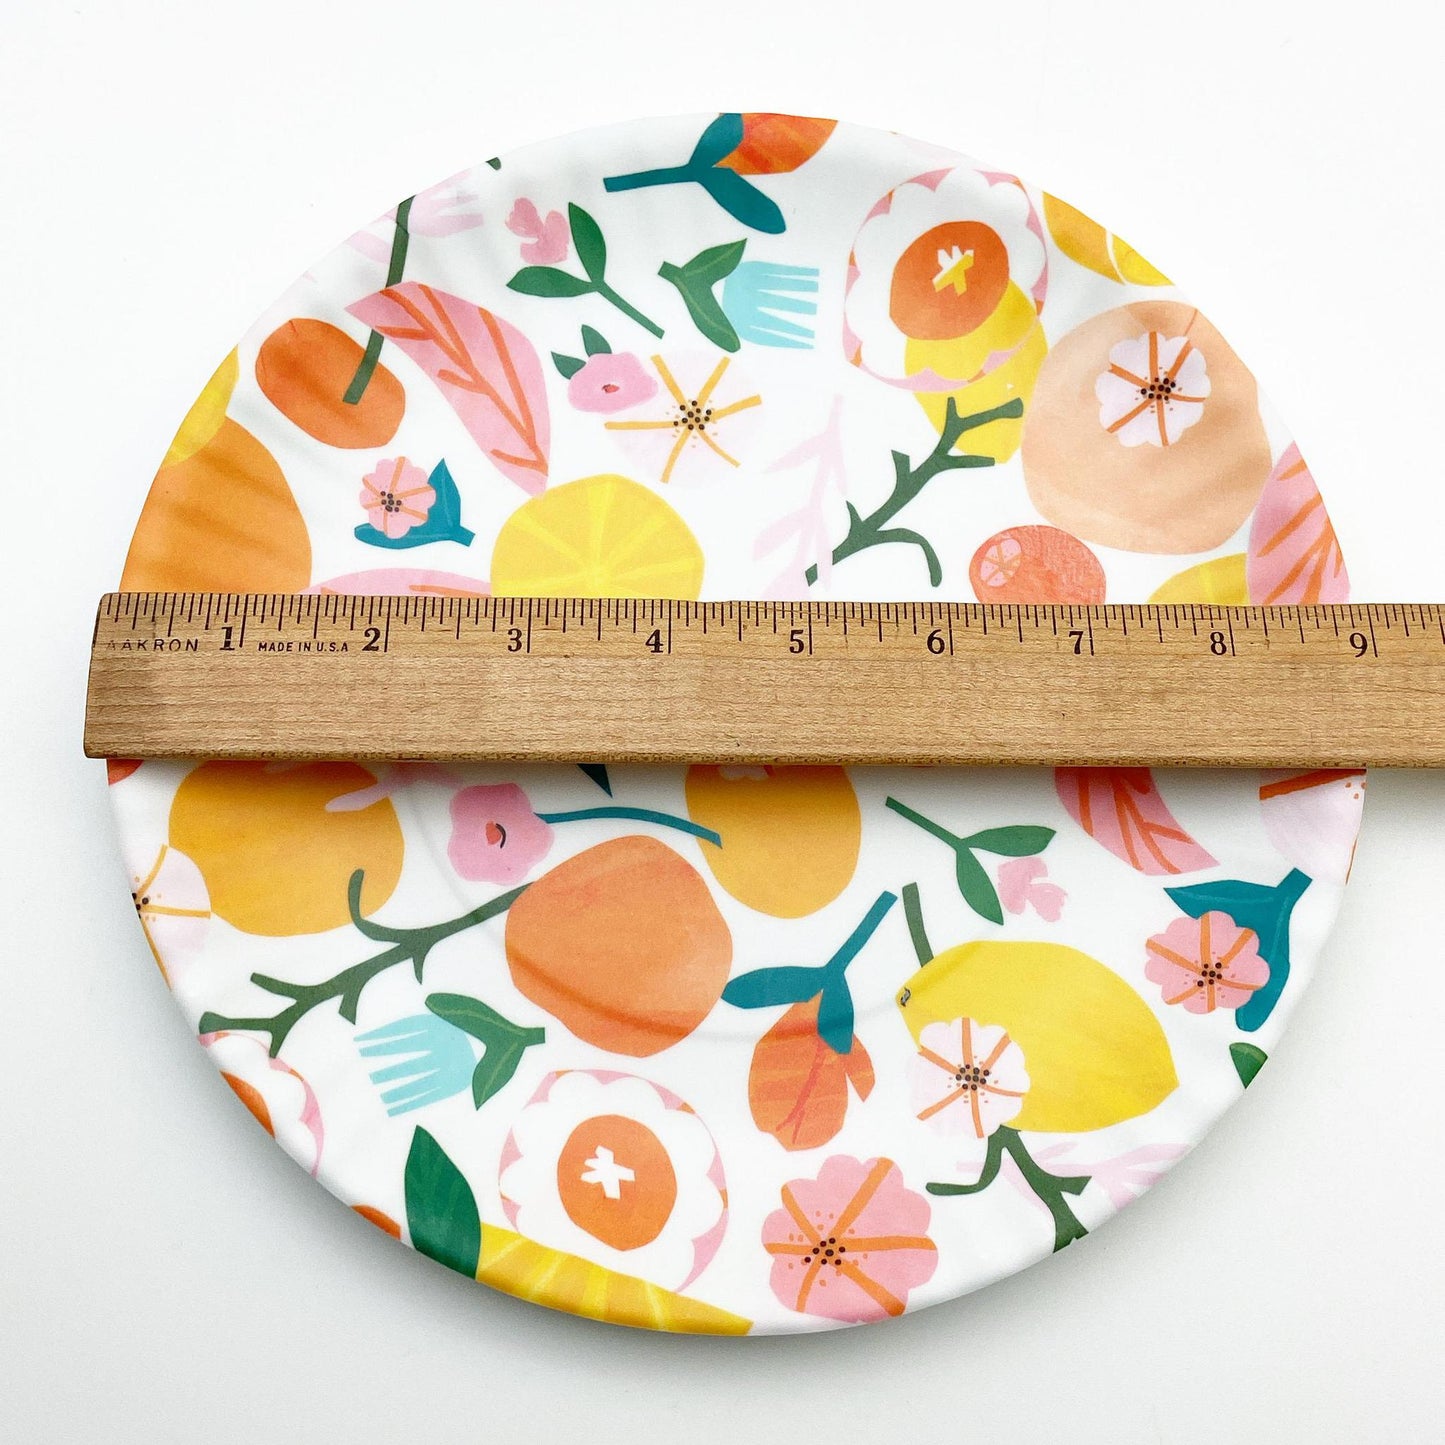 Plate - Melamine "Paper Plate" - Summer Fruit & Flowers